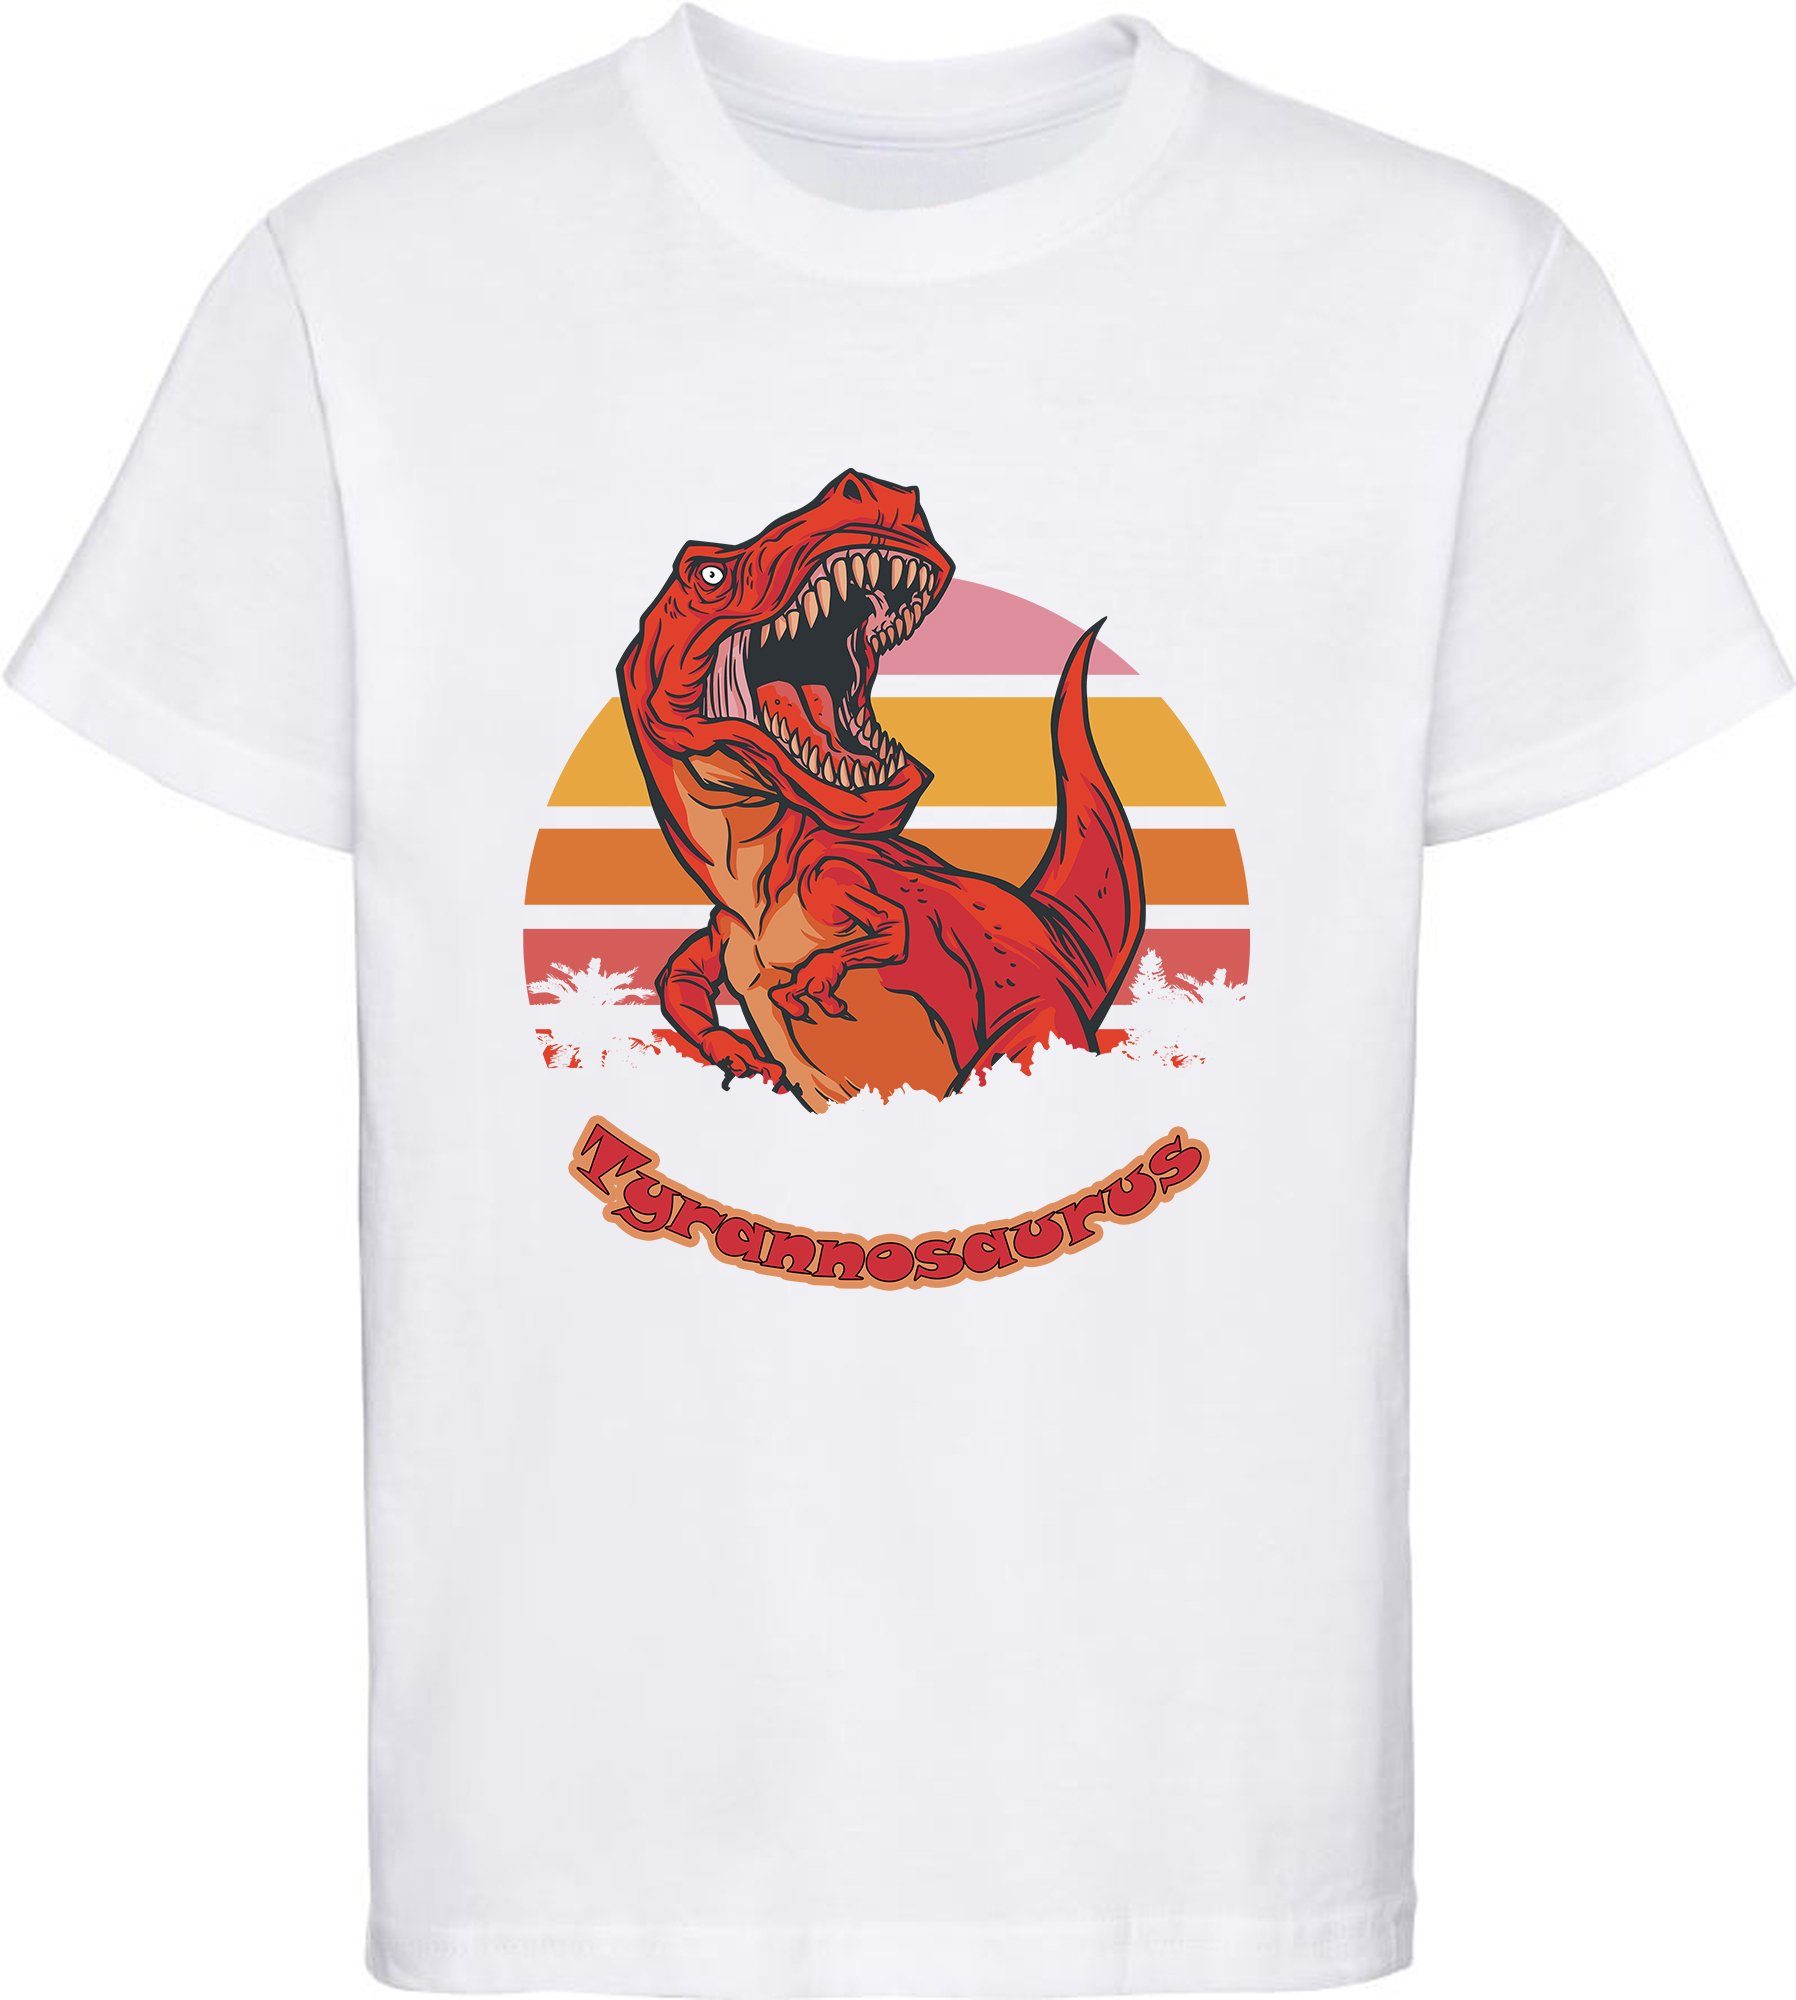 MyDesign24 Print-Shirt bedrucktes Kinder T-Shirt mit roten brüllendem T-Rex Baumwollshirt mit Dino, schwarz, weiß, rot, blau, i100 weiss